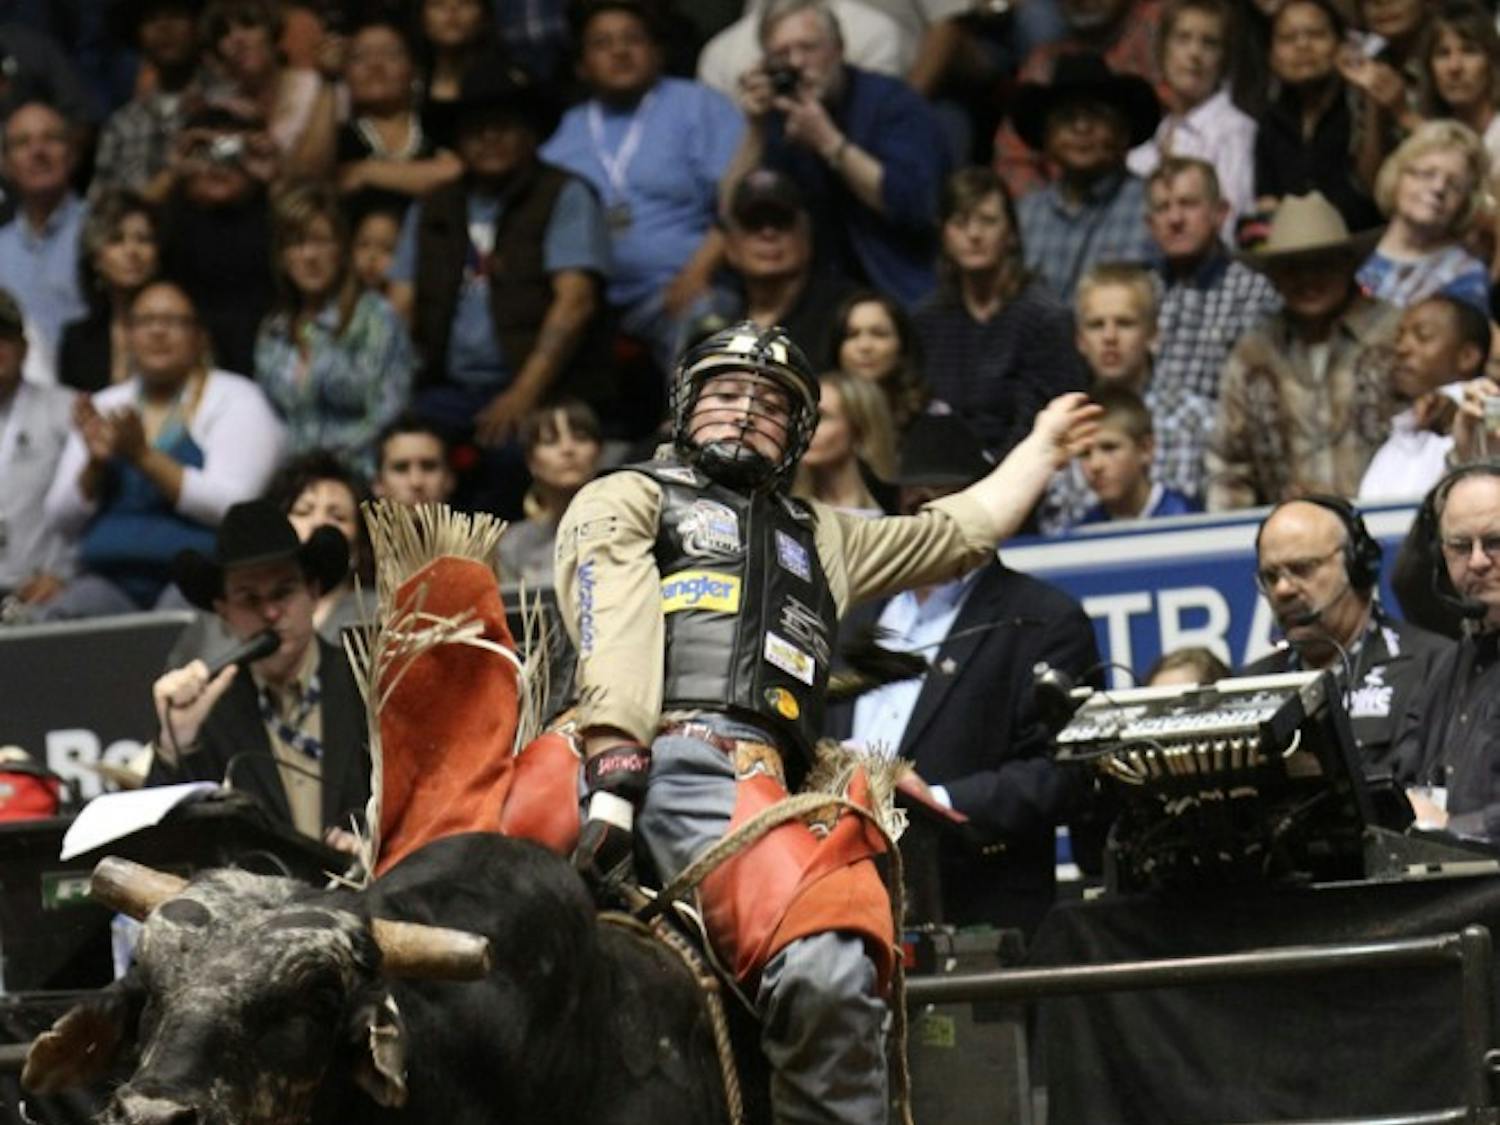 Professional Bull Riders in Albuquerque